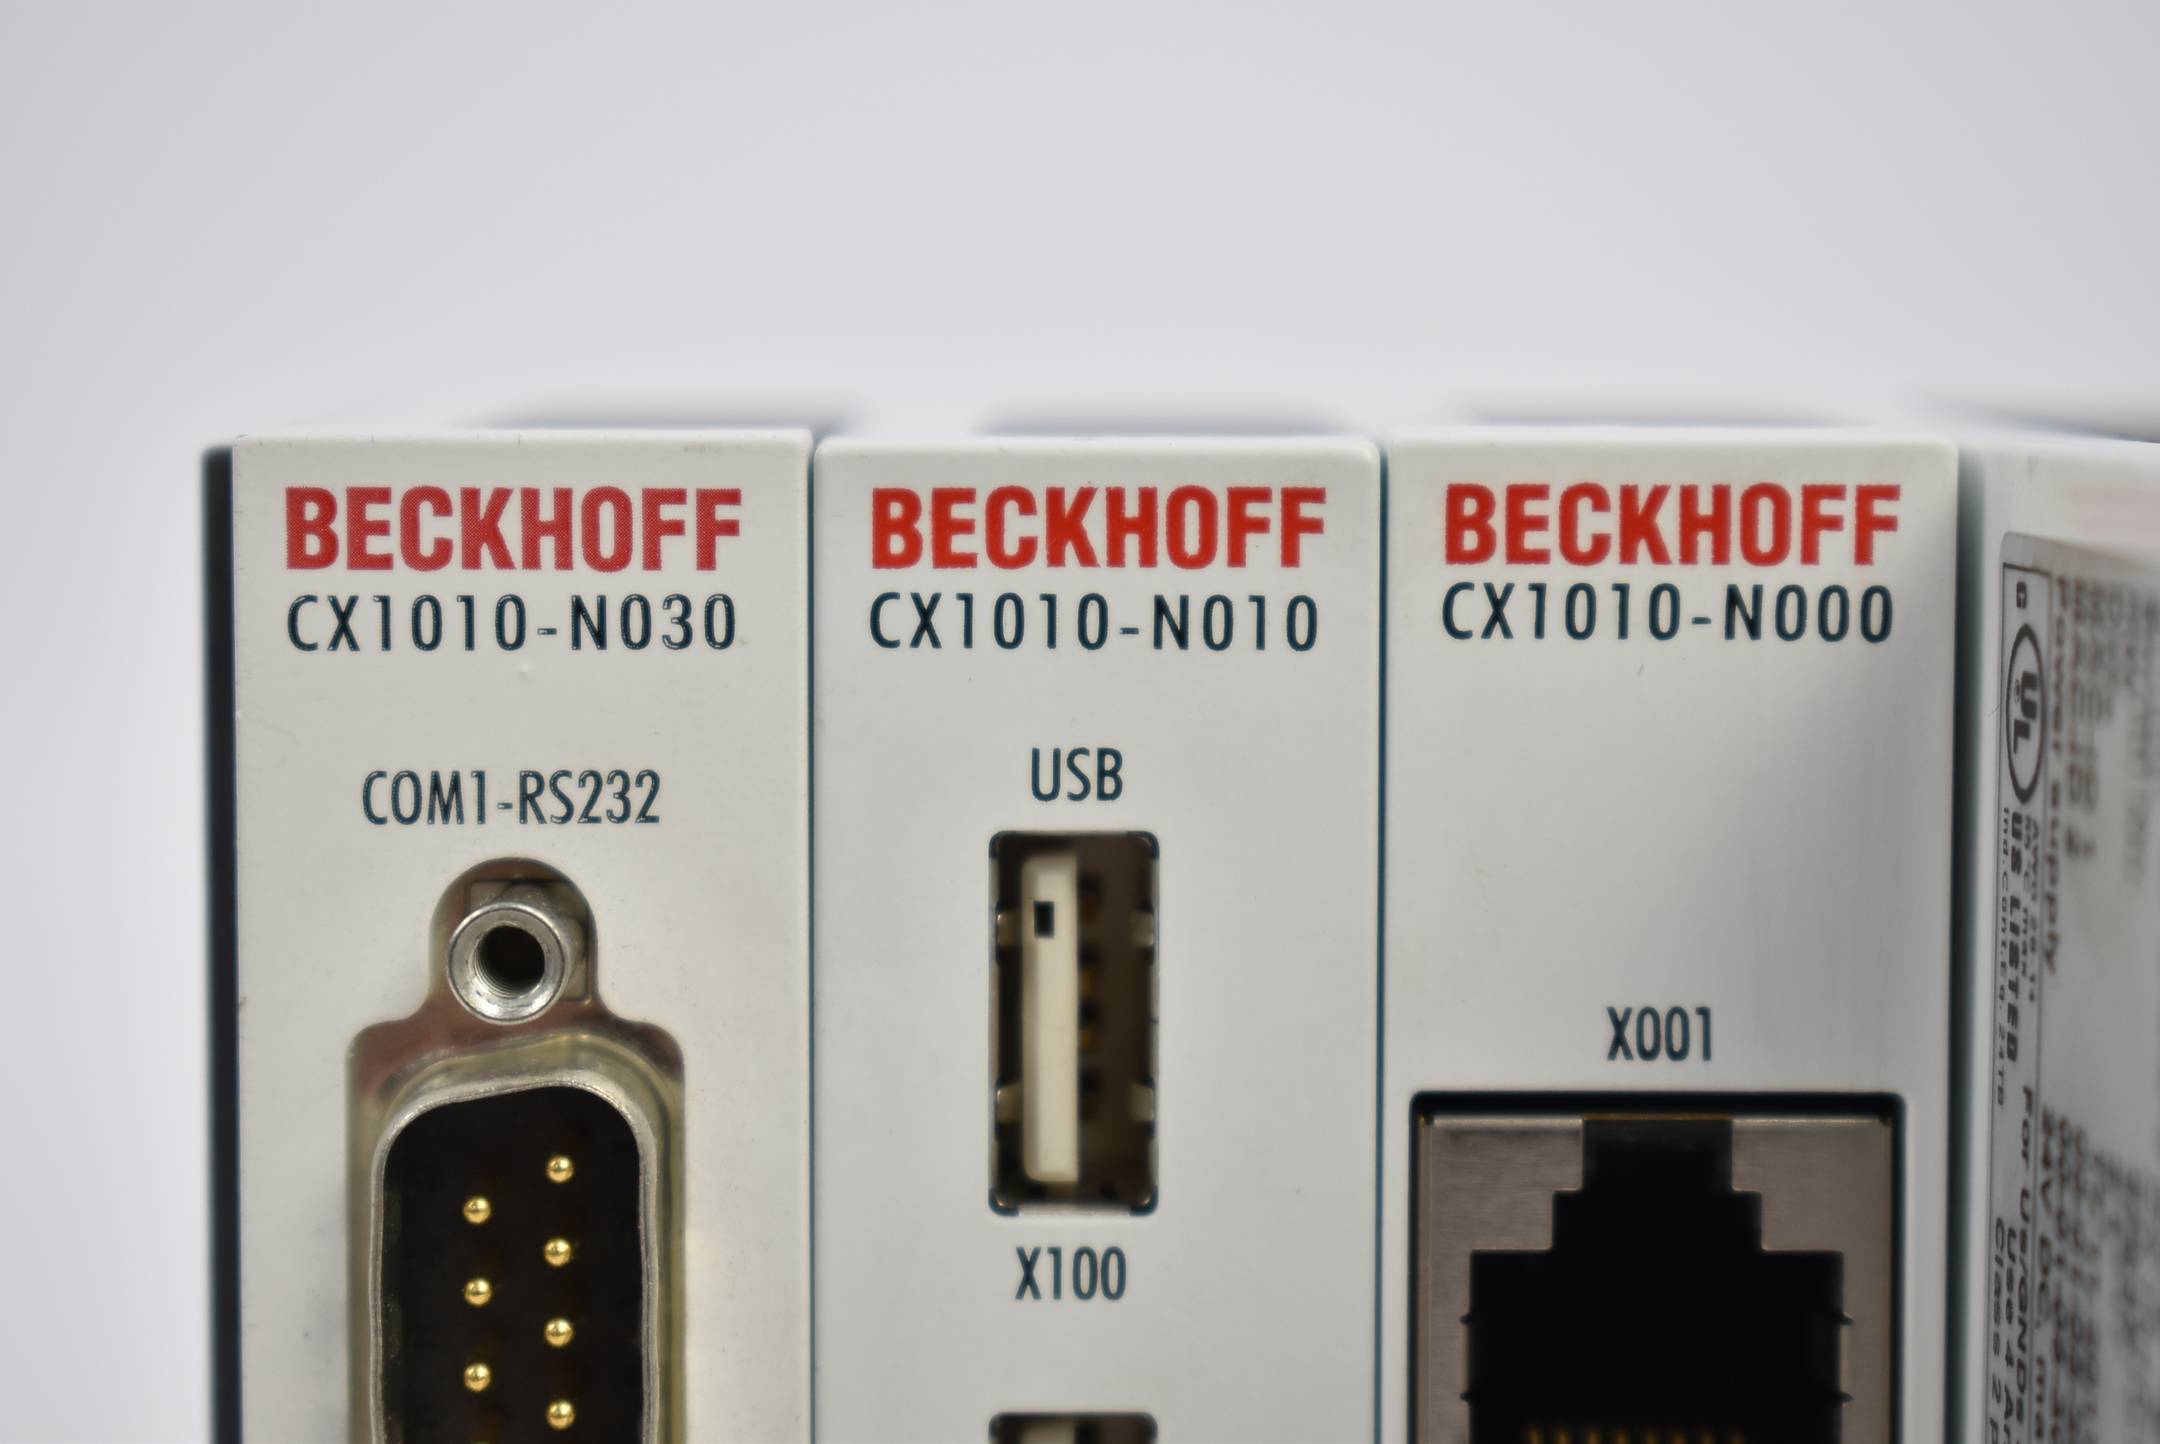 Beckhoff CX1010-0100 + CX1010-N000 + CX1010-N010 + CX1010-N030